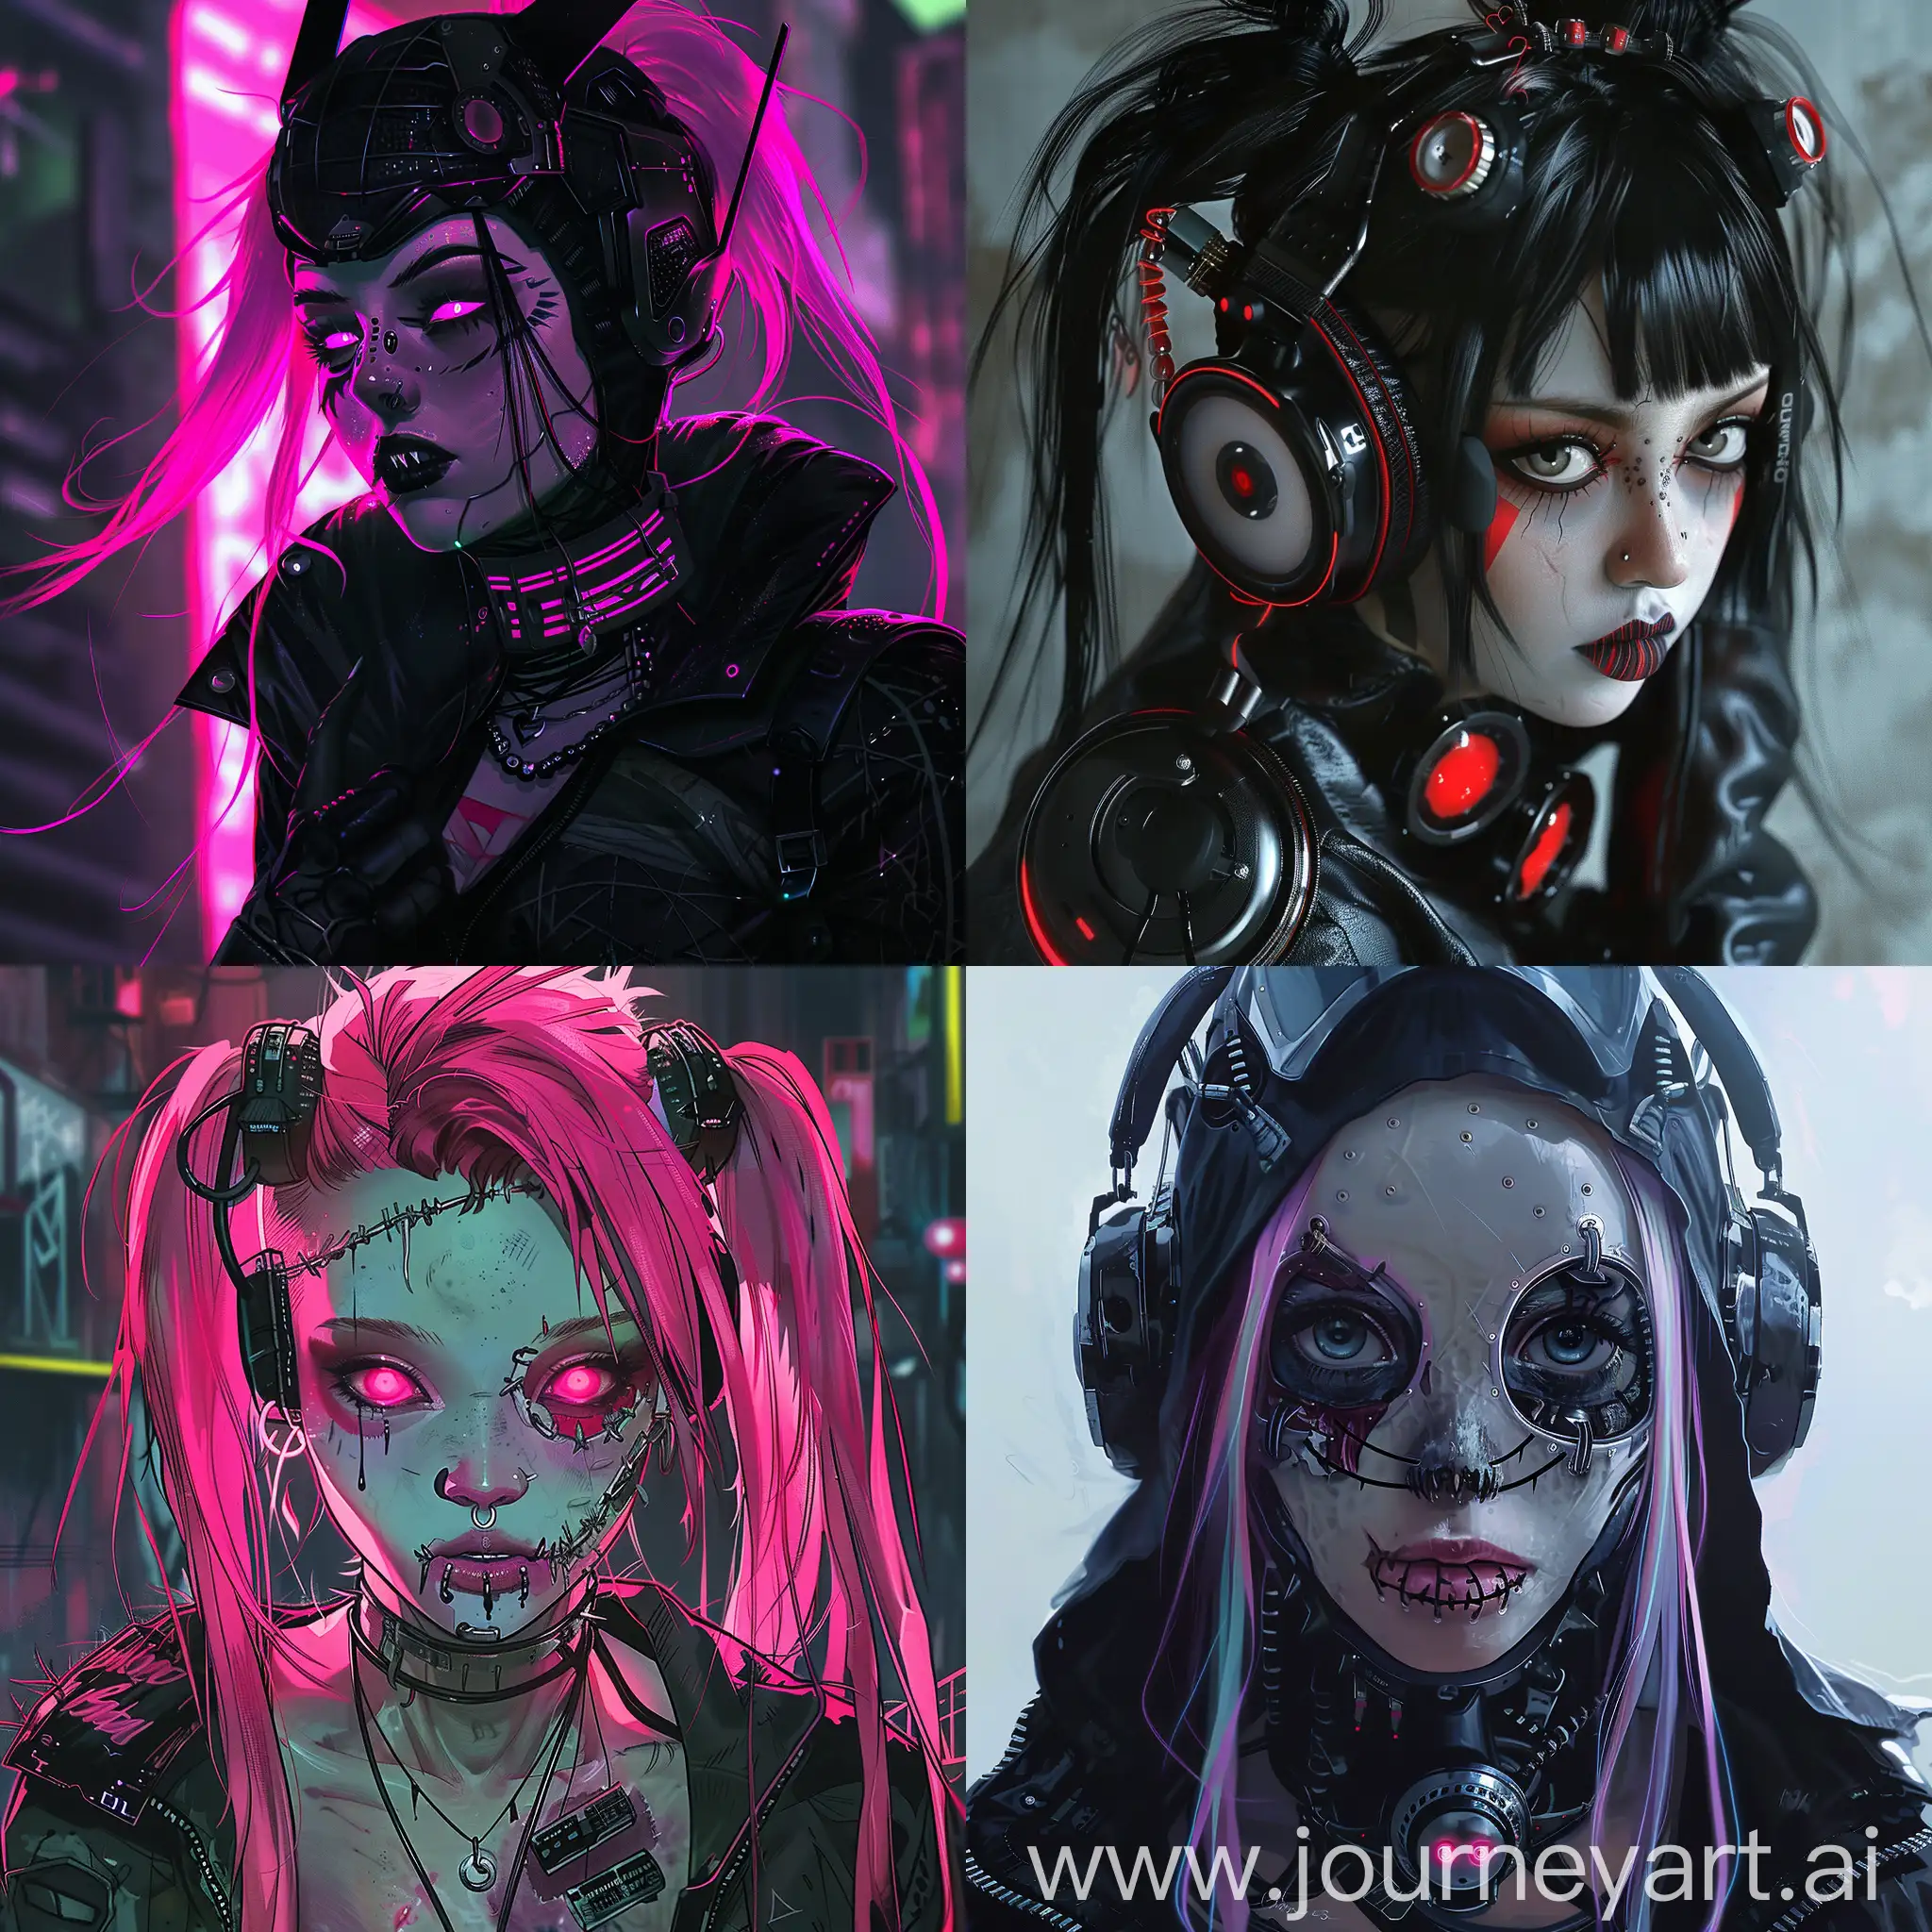 Fierce-Cyberpunk-Monster-Girl-in-Futuristic-Setting